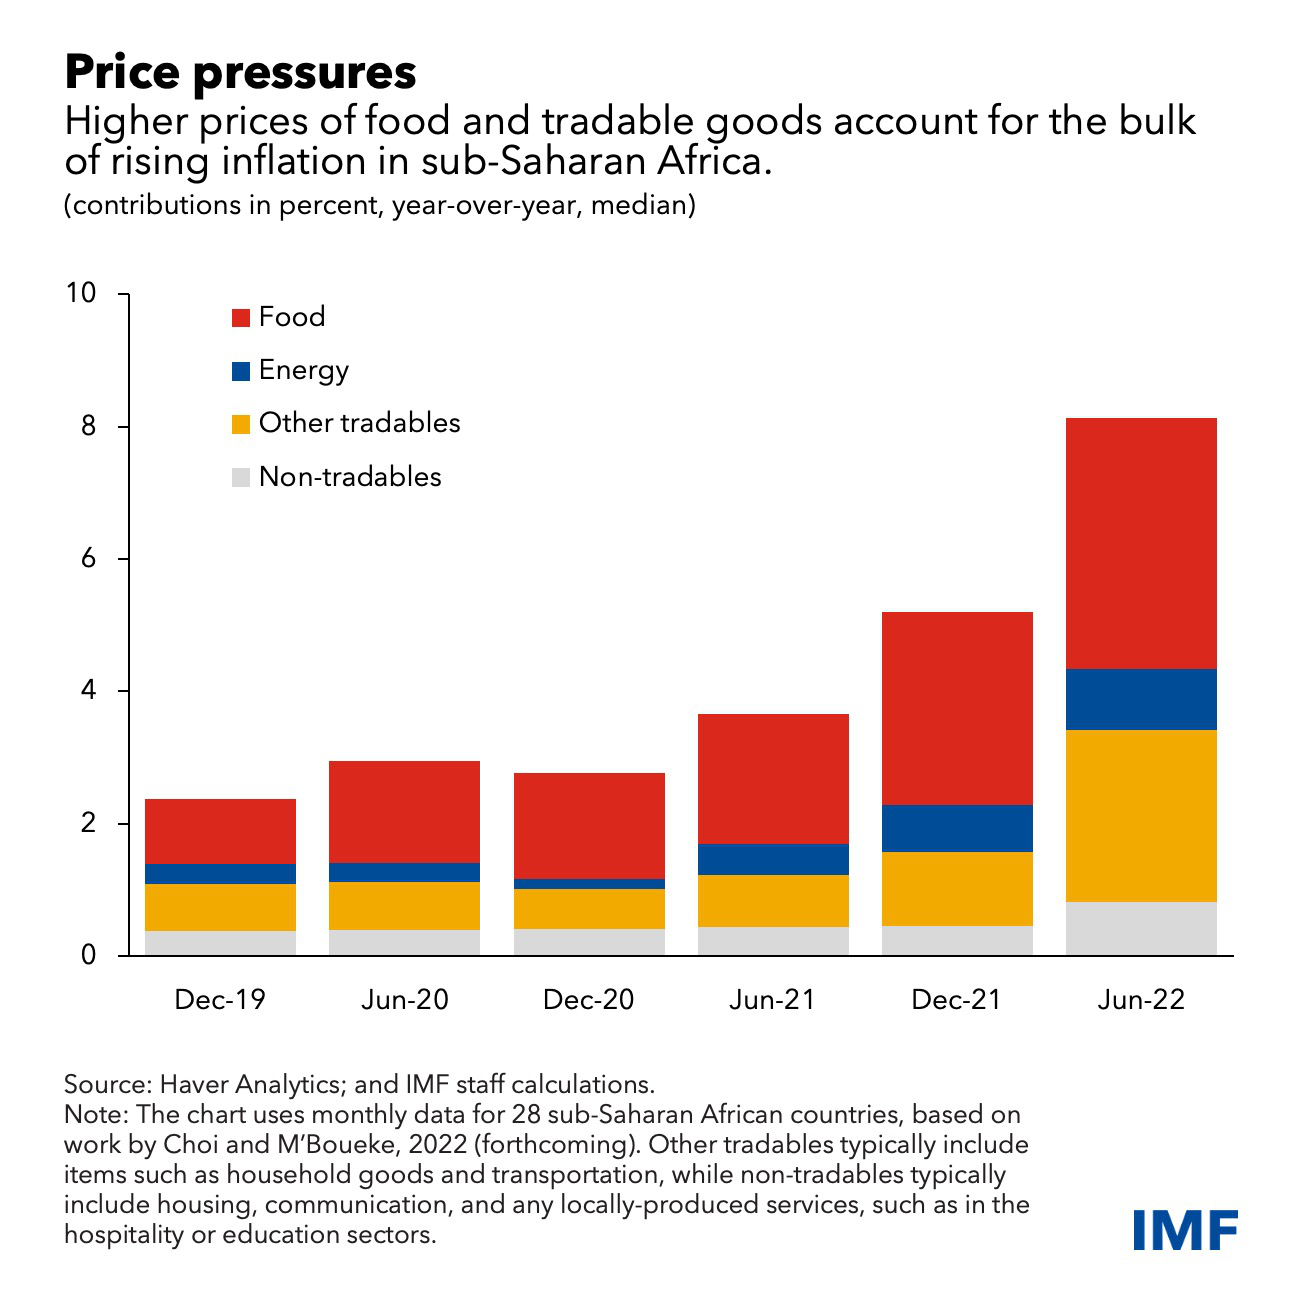 食品和贸易商品价格上涨是撒哈拉以南非洲地区通货膨胀加剧的主要原因